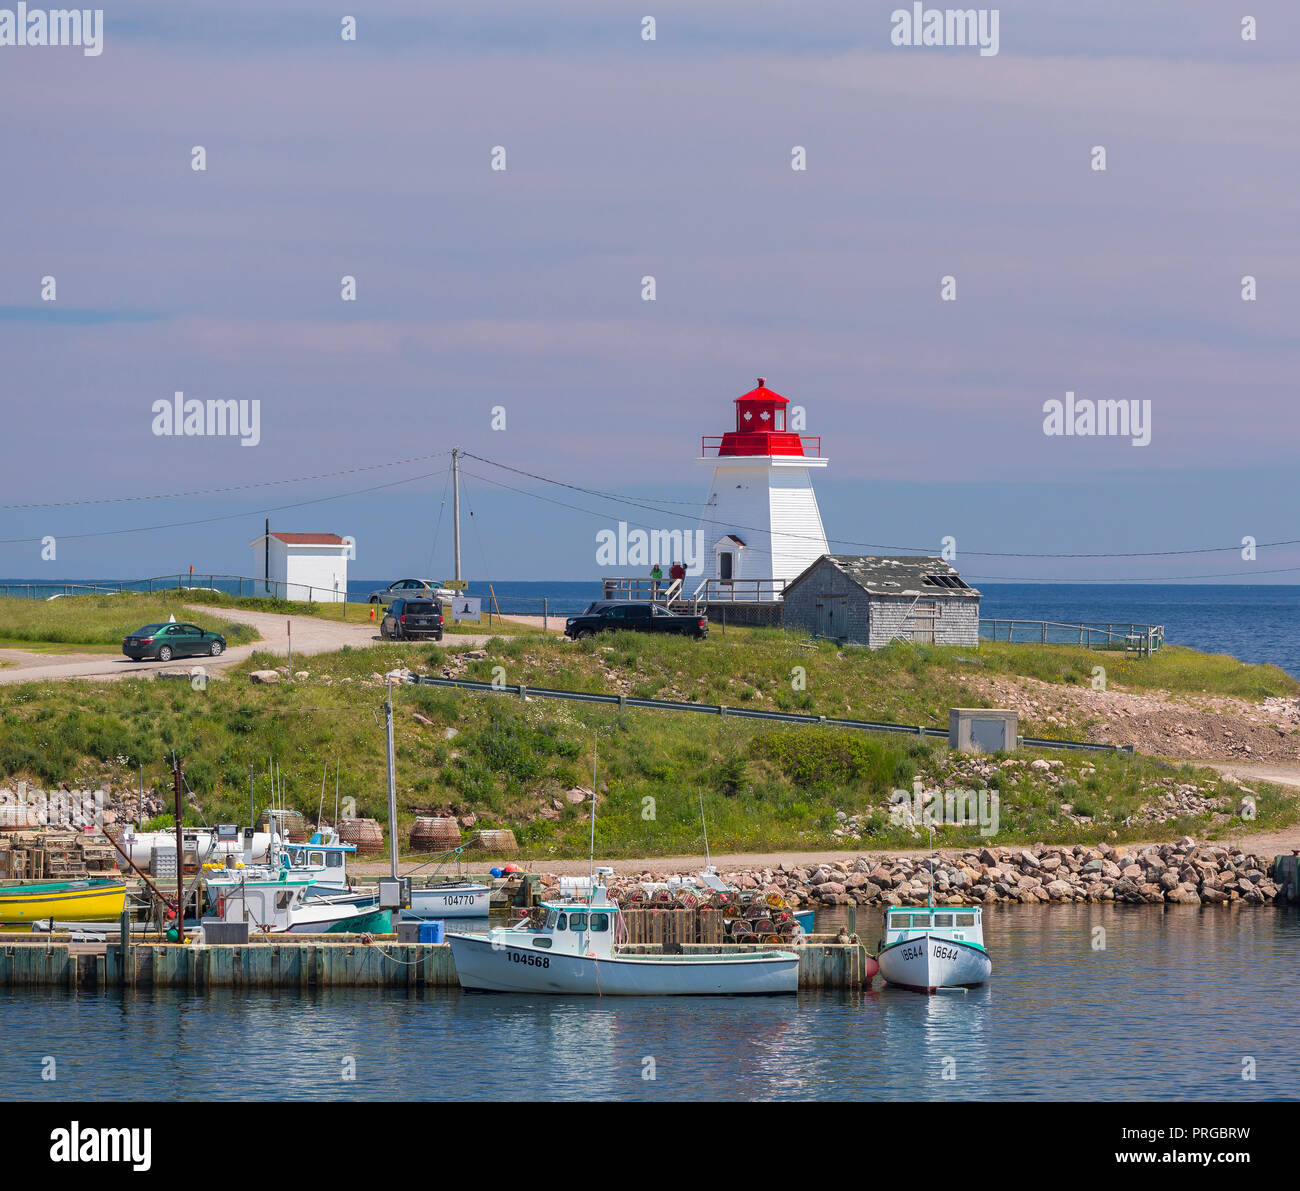 NEIL'S HARBOUR, île du Cap-Breton, Nouvelle-Écosse, Canada - Phare dans petit village de pêcheurs. Banque D'Images